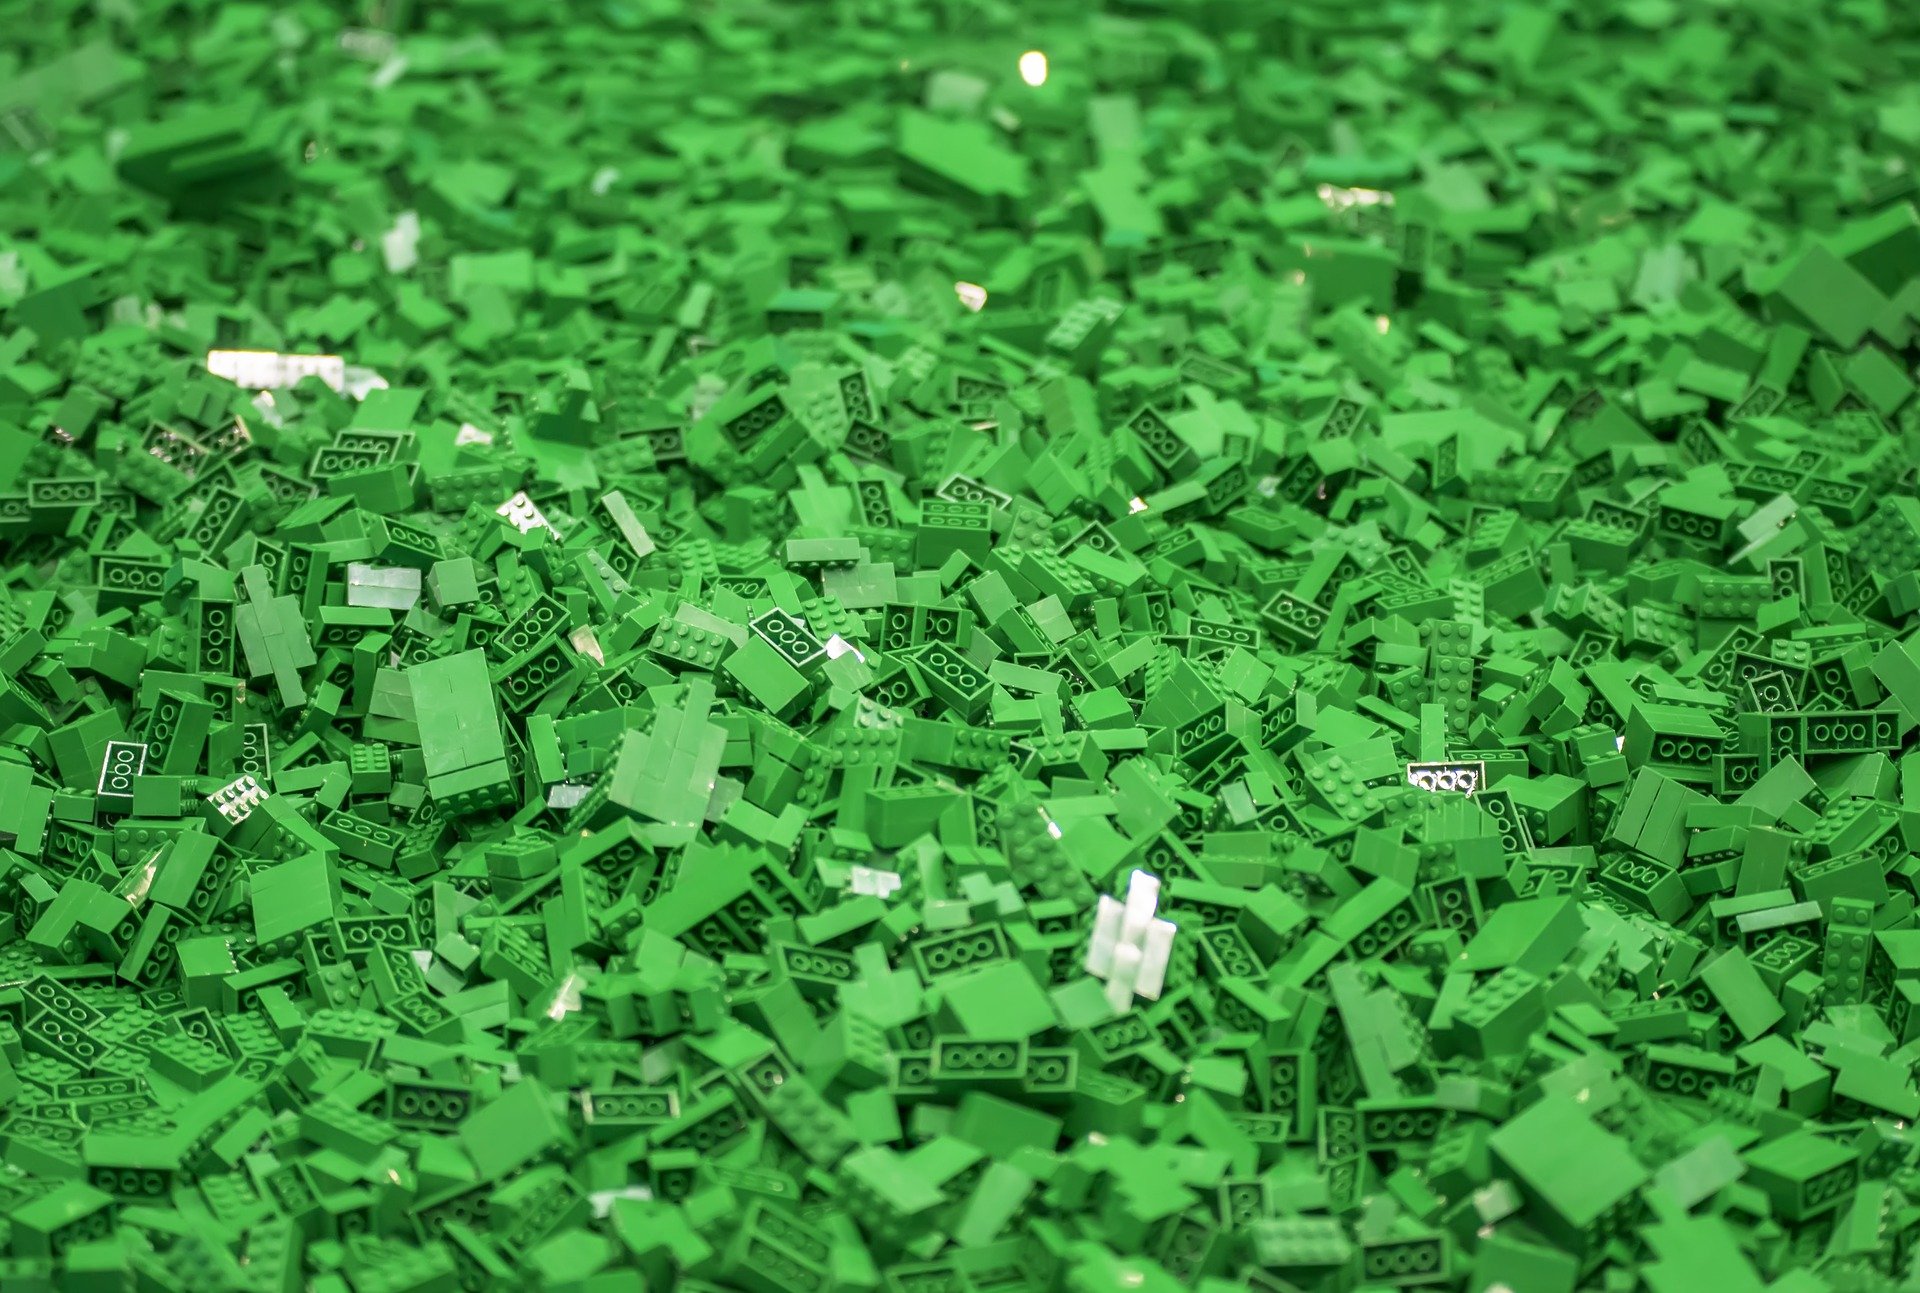 LEGO White Noise is een nieuwe speciale LEGO-playlist op Spotify voor bouwers